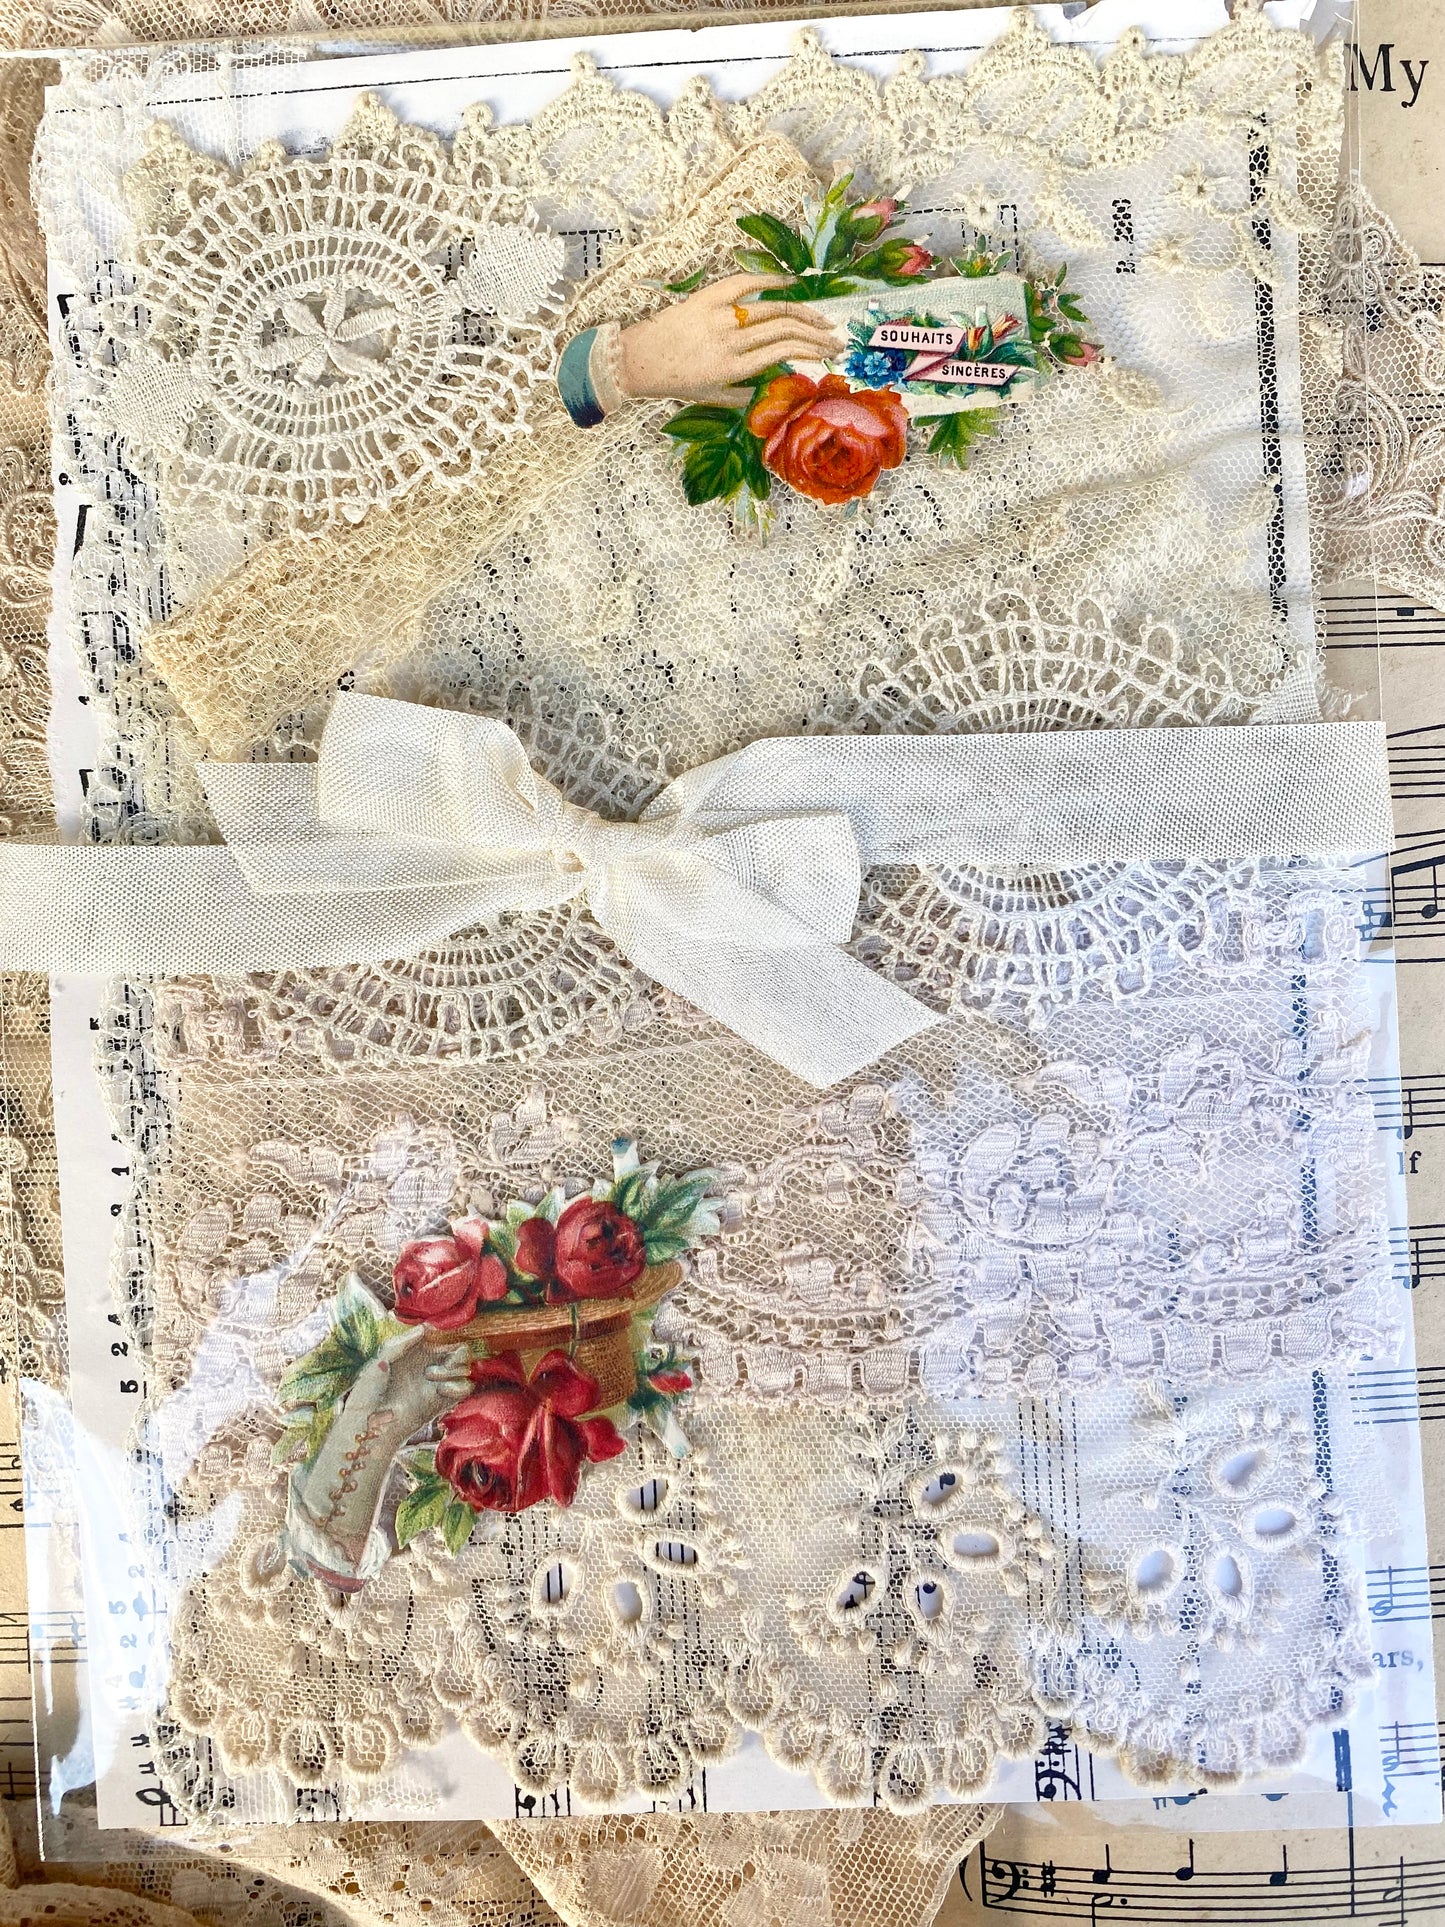 Exquisite antique lace ephemera collection. Scraps & Lace